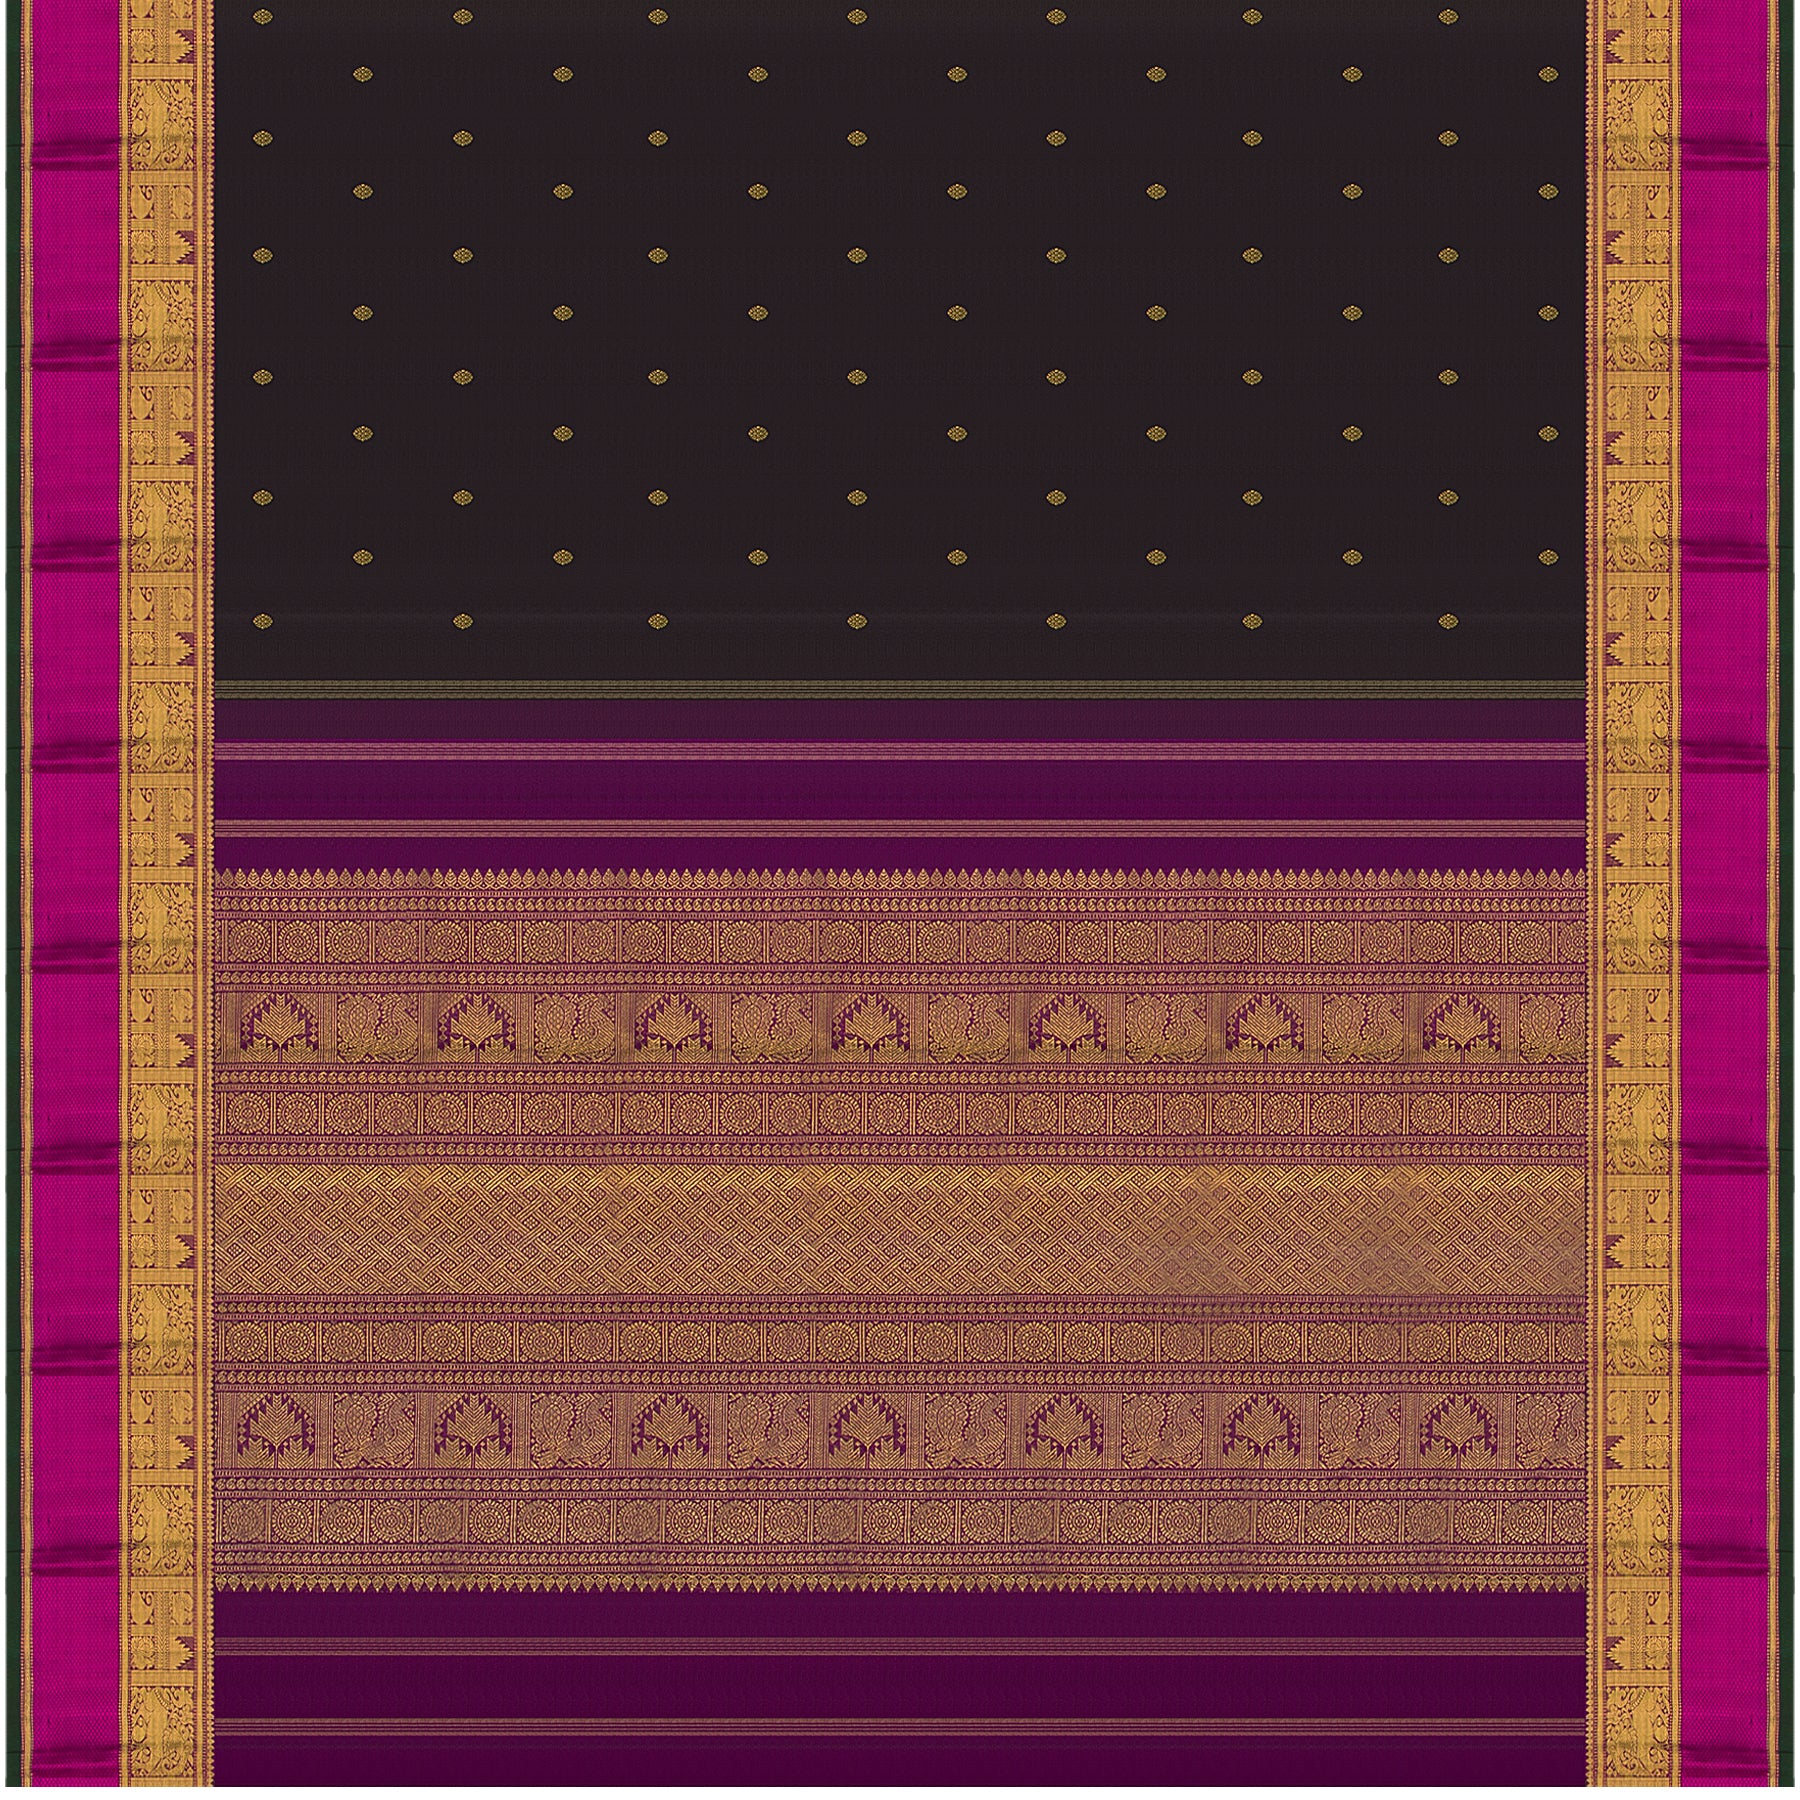 Kanakavalli Kanjivaram Silk Sari 22-599-HS001-09864 - Full View